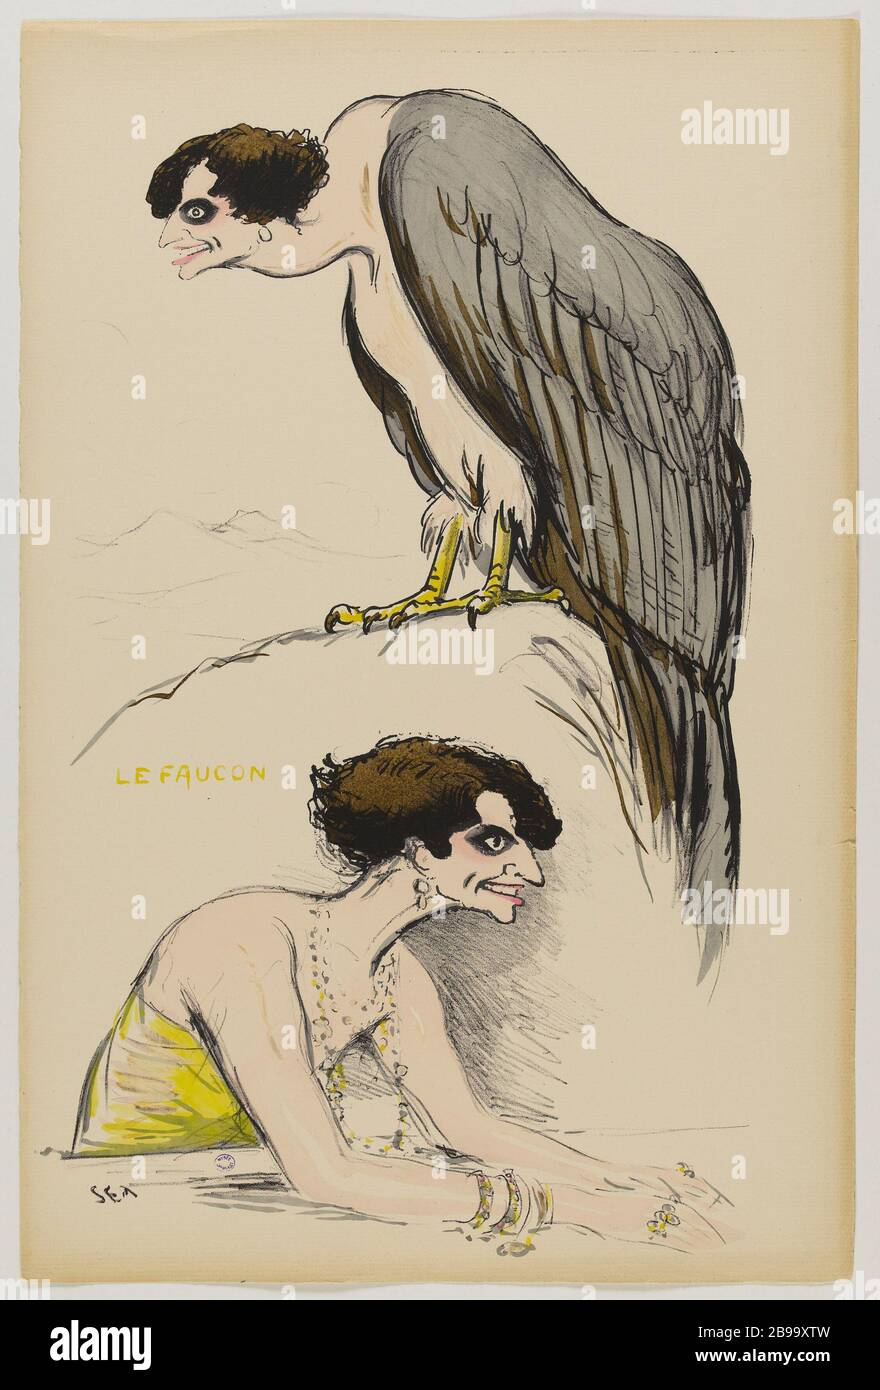 ALBUM 'THE NEW WORLD' (2ND SERIES): THE FALCON (PL 10) Sem (1863-1934). 'Album 'le Nouveau Monde' (2ème série) : le faucon (pl 10)'. Lithographie coloriée, 1923. Paris, musée Carnavalet. Stock Photo